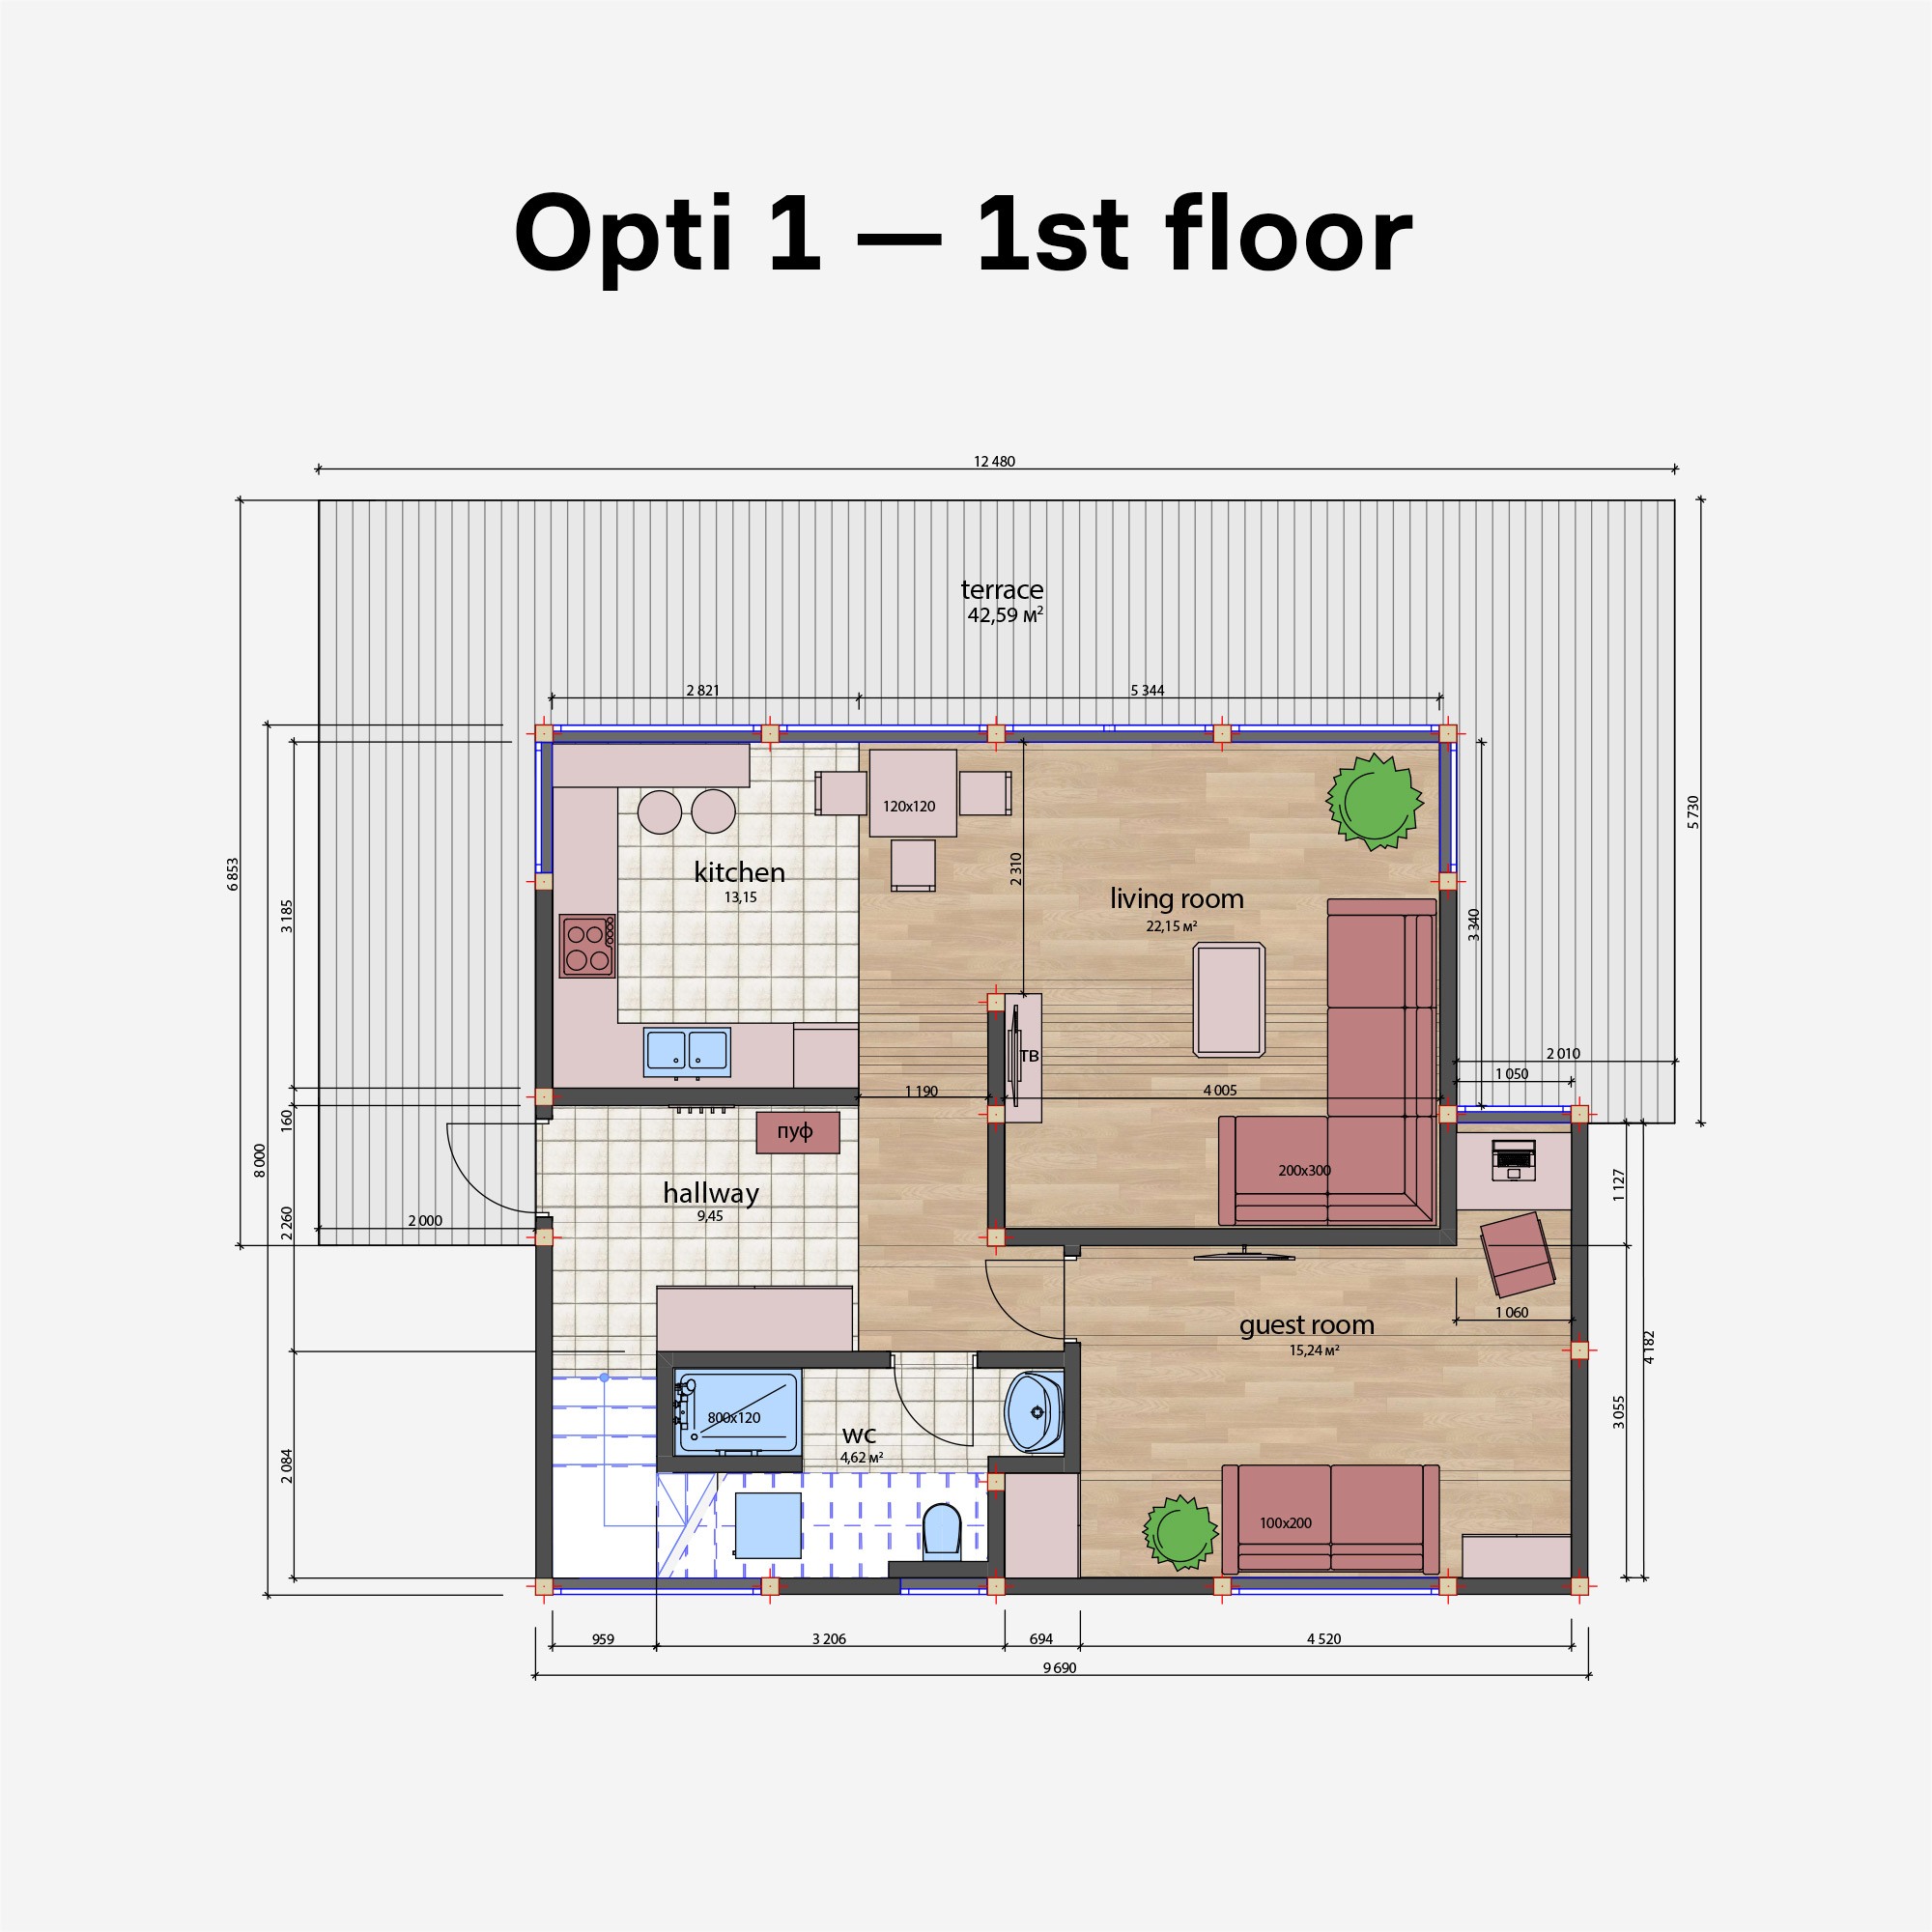 opti-1_1st_floor_en.jpg